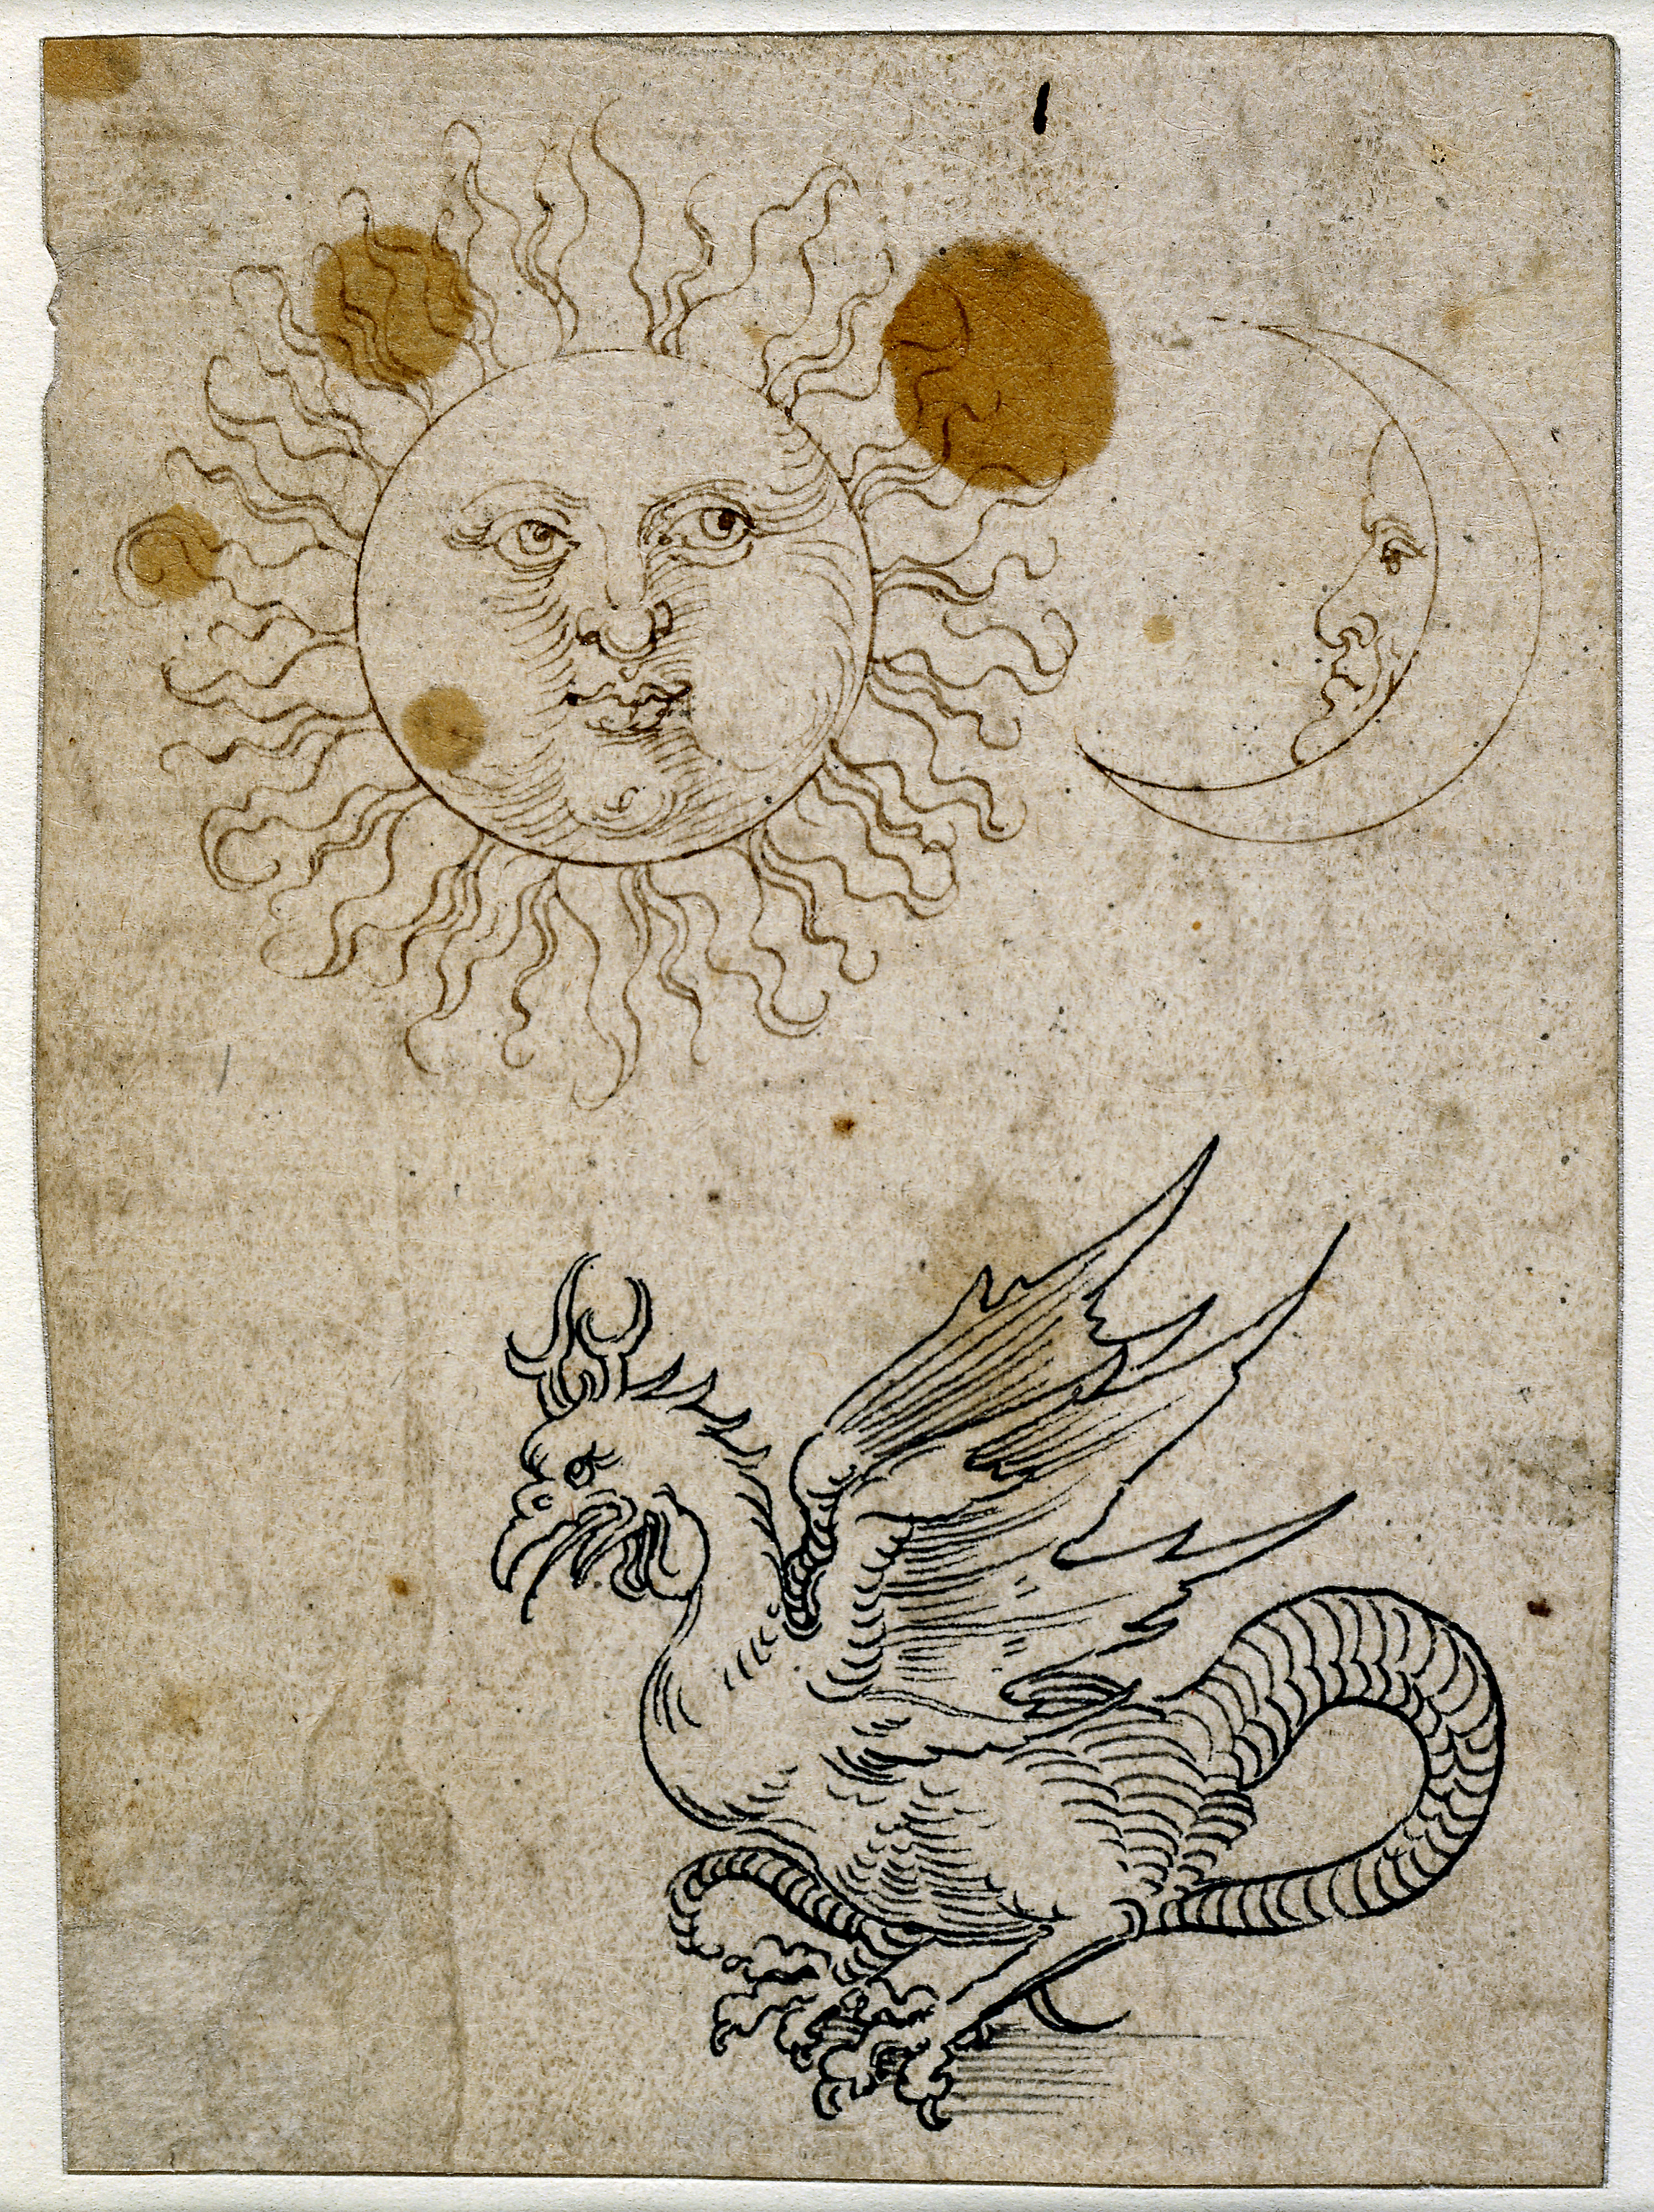 Güneş, Ay ve Basilisk by Albrecht Dürer - 1507 - 1519 British Museum